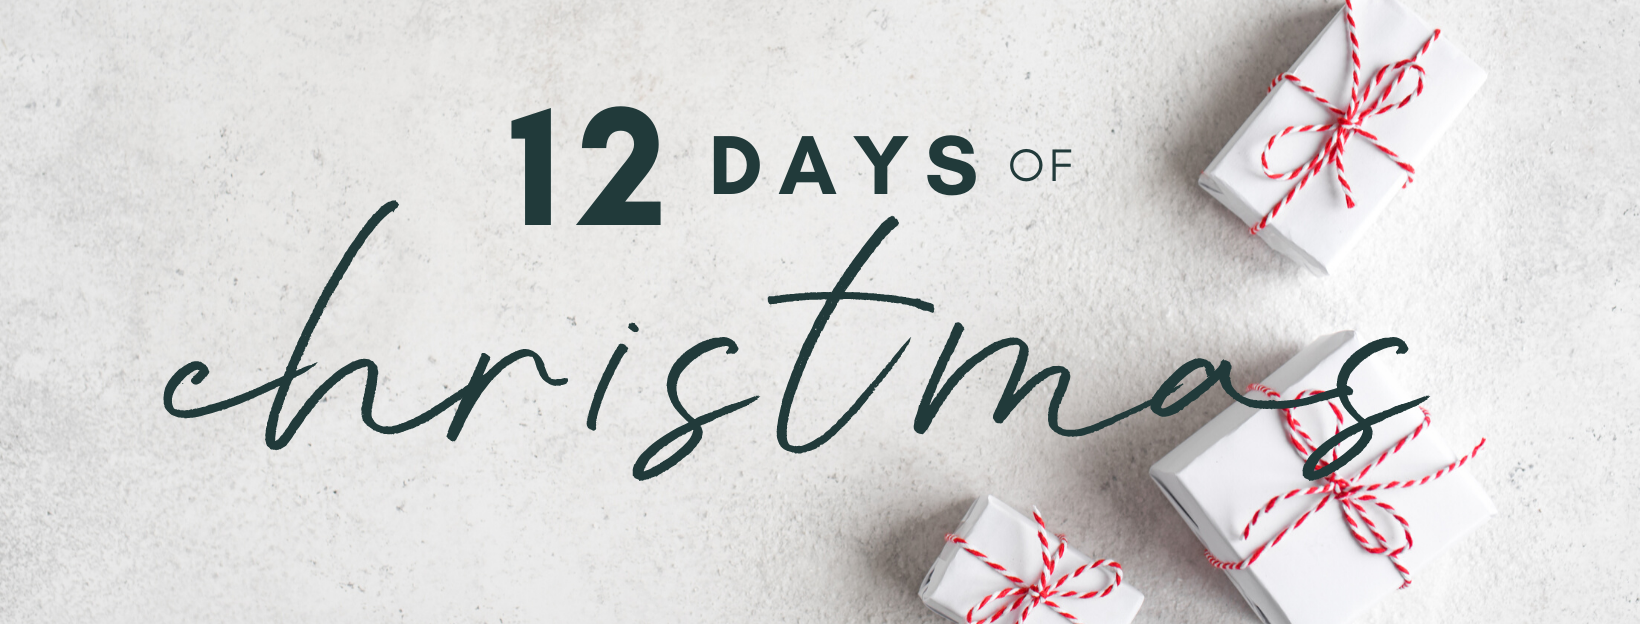 12 DAYS OF CHRISTMAS SALE